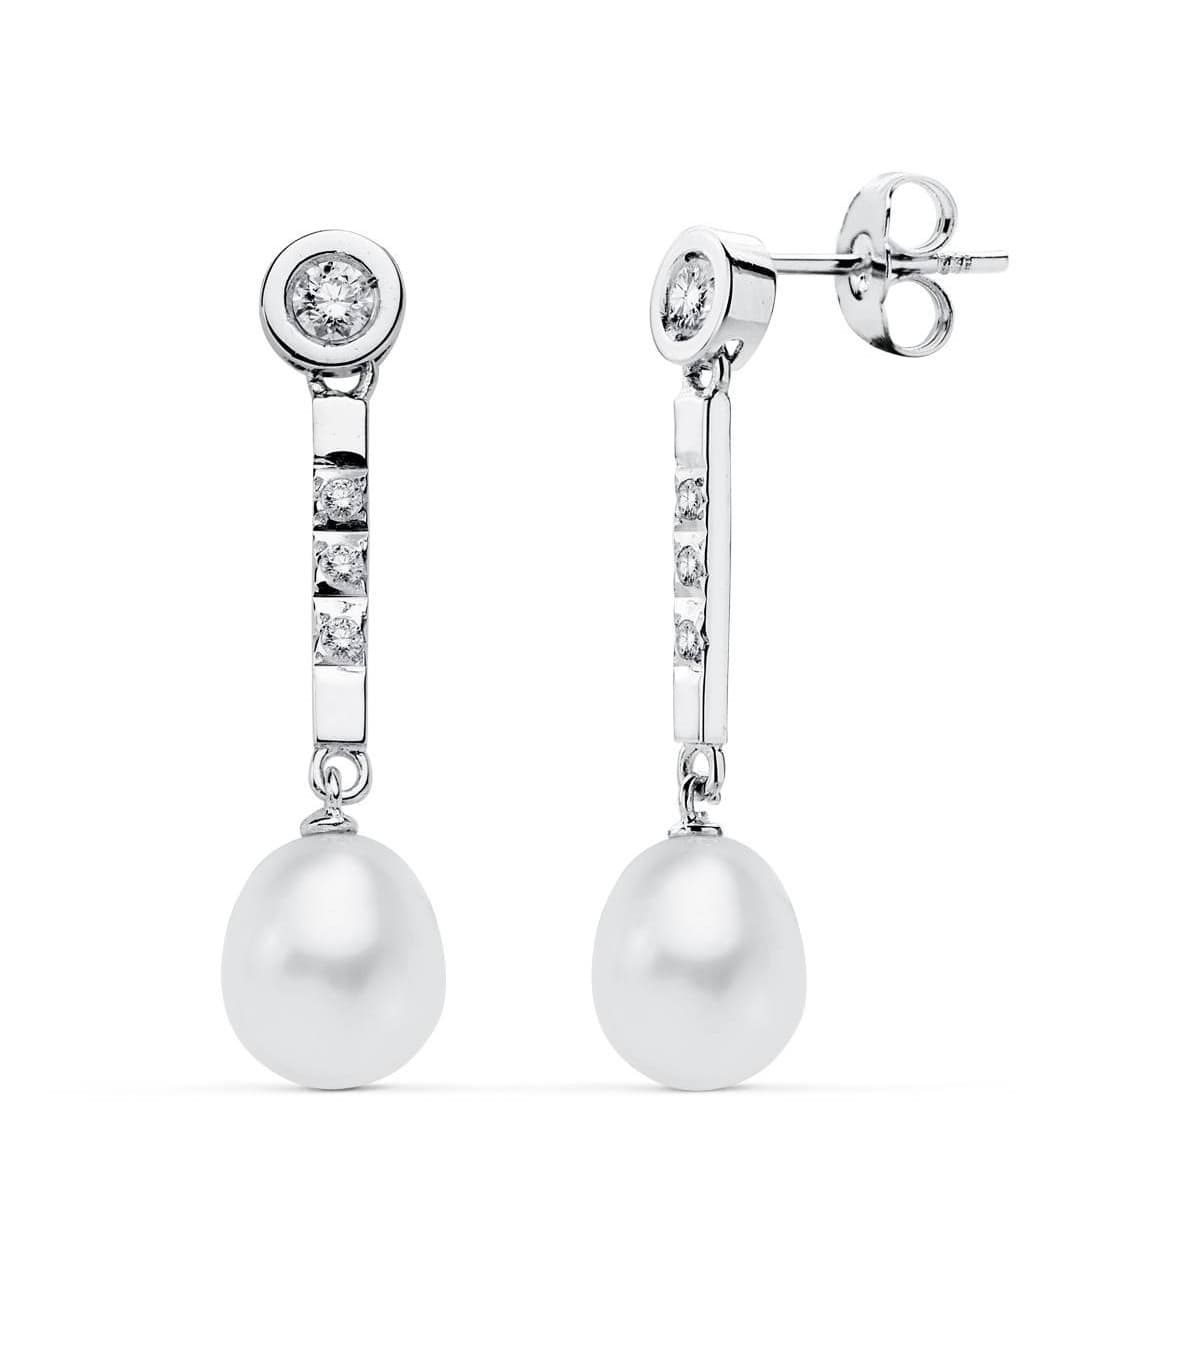 Boucle d'oreille pendante perle de crystal pas cher 24€